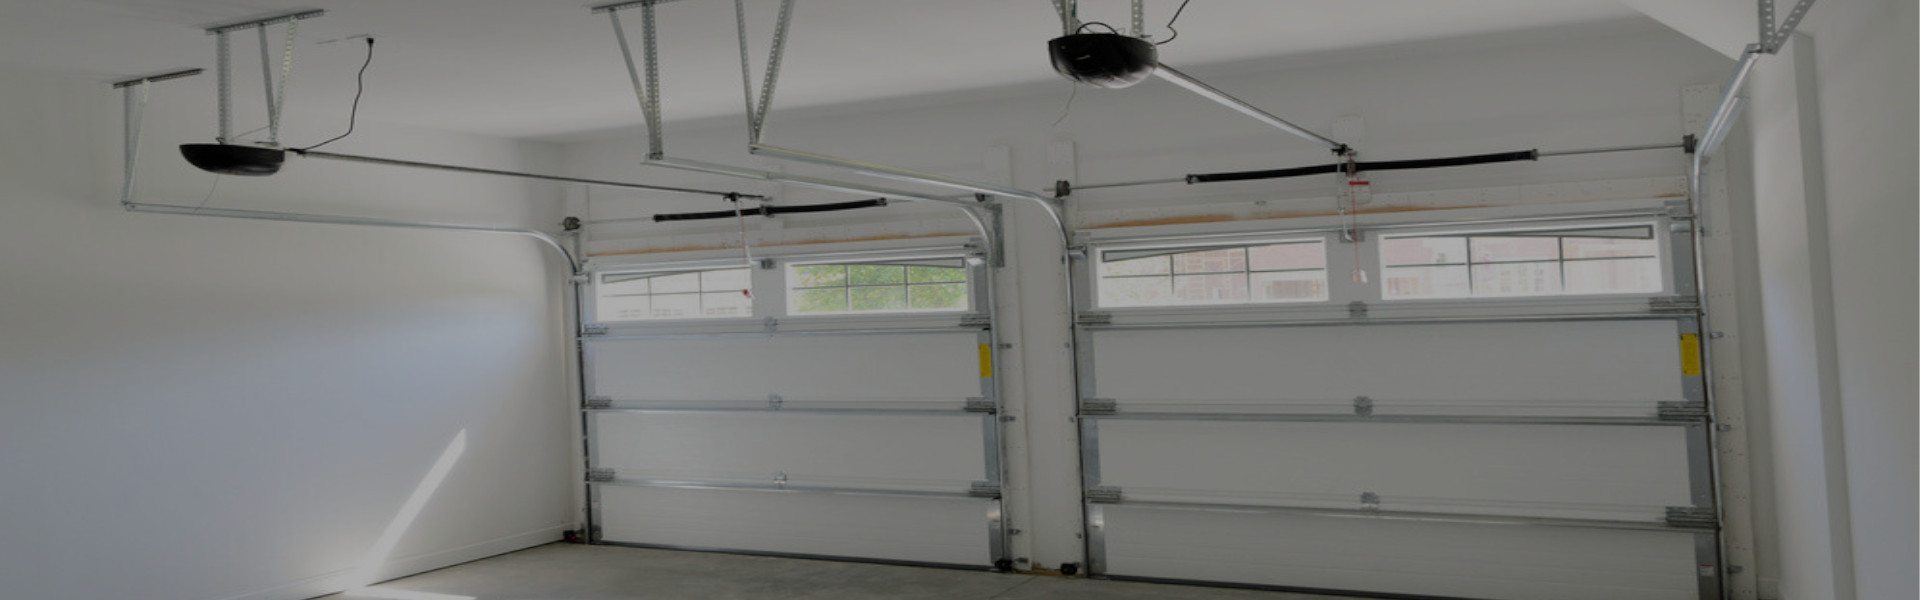 Slider Garage Door Repair, Glaziers in East Ham, Beckton, E6